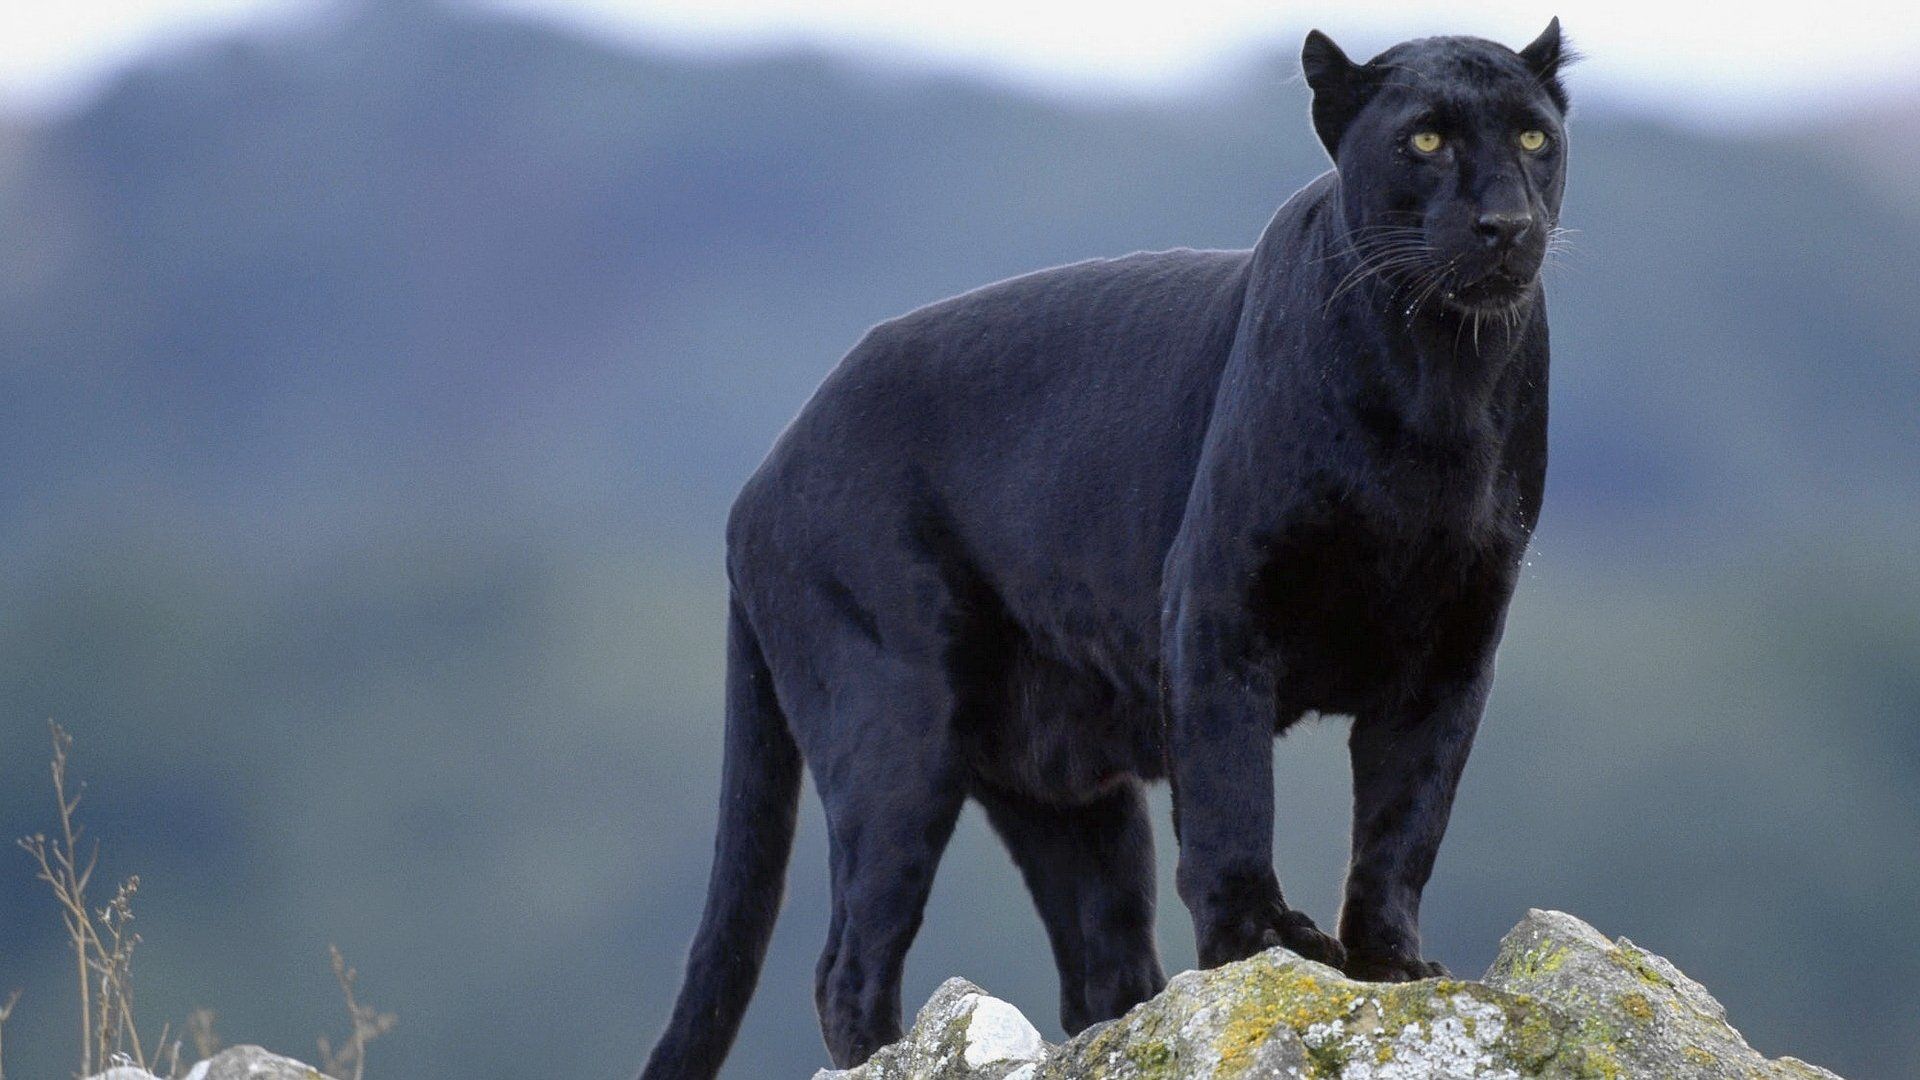 Black Panther Animal Wallpaper Top